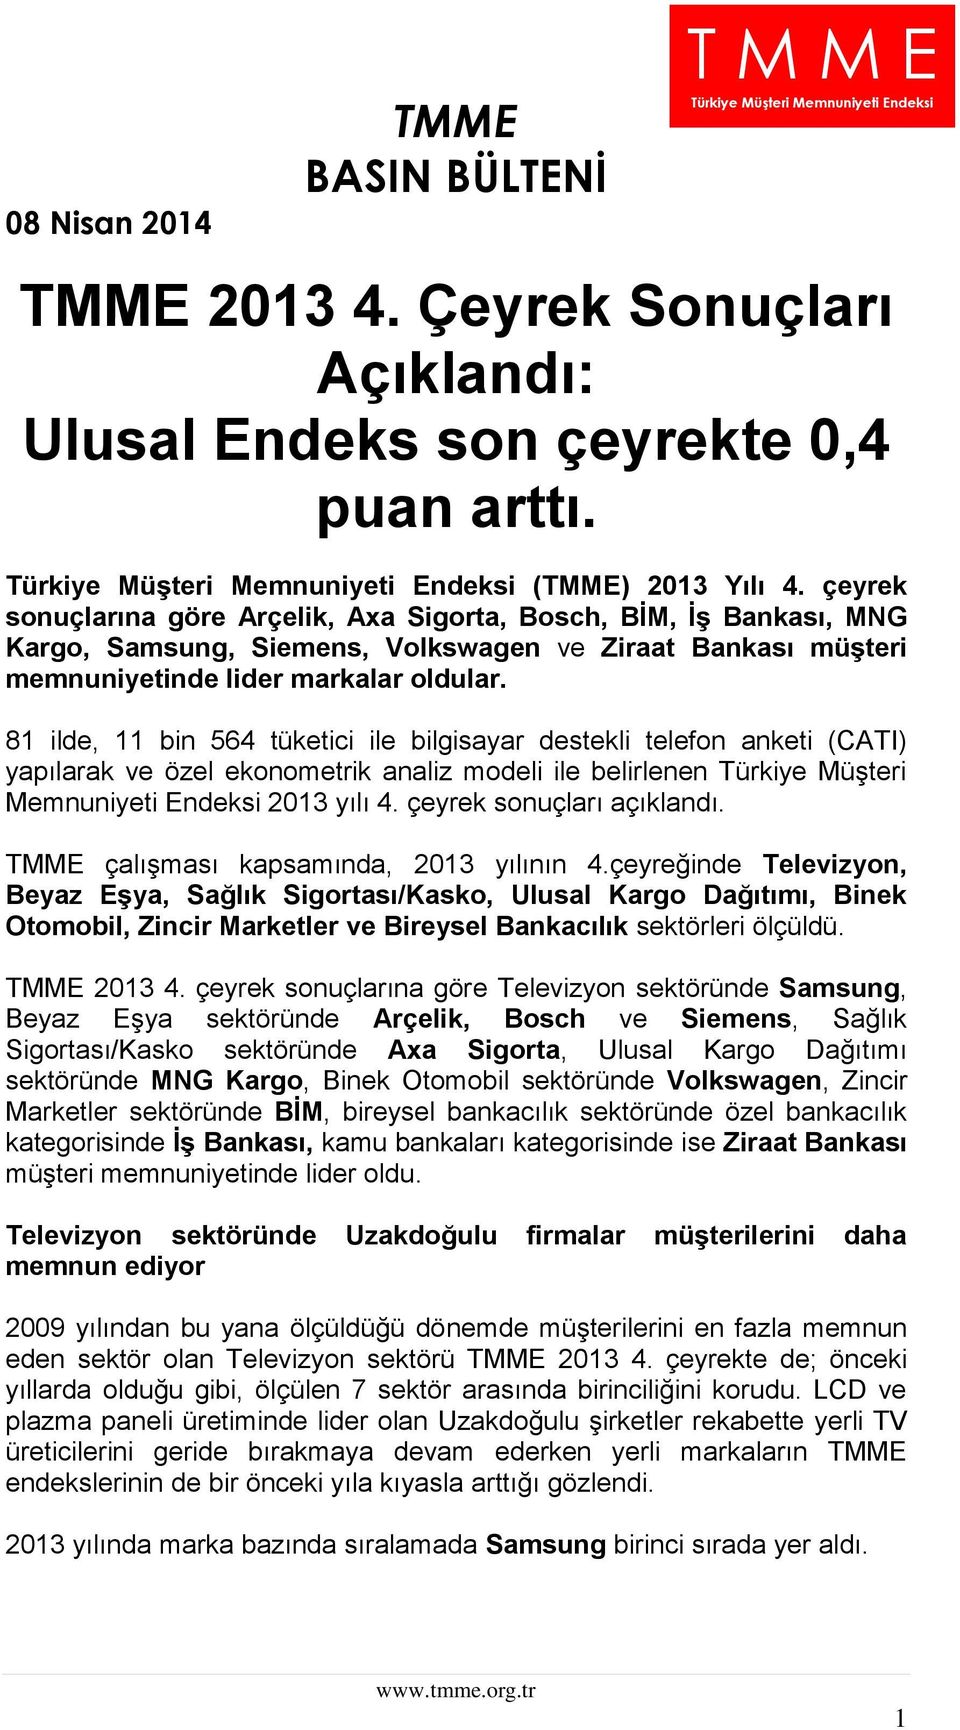 81 ilde, 11 bin 564 tüketici ile bilgisayar destekli telefon anketi (CATI) yapılarak ve özel ekonometrik analiz modeli ile belirlenen Türkiye Müşteri Memnuniyeti Endeksi 2013 yılı 4.